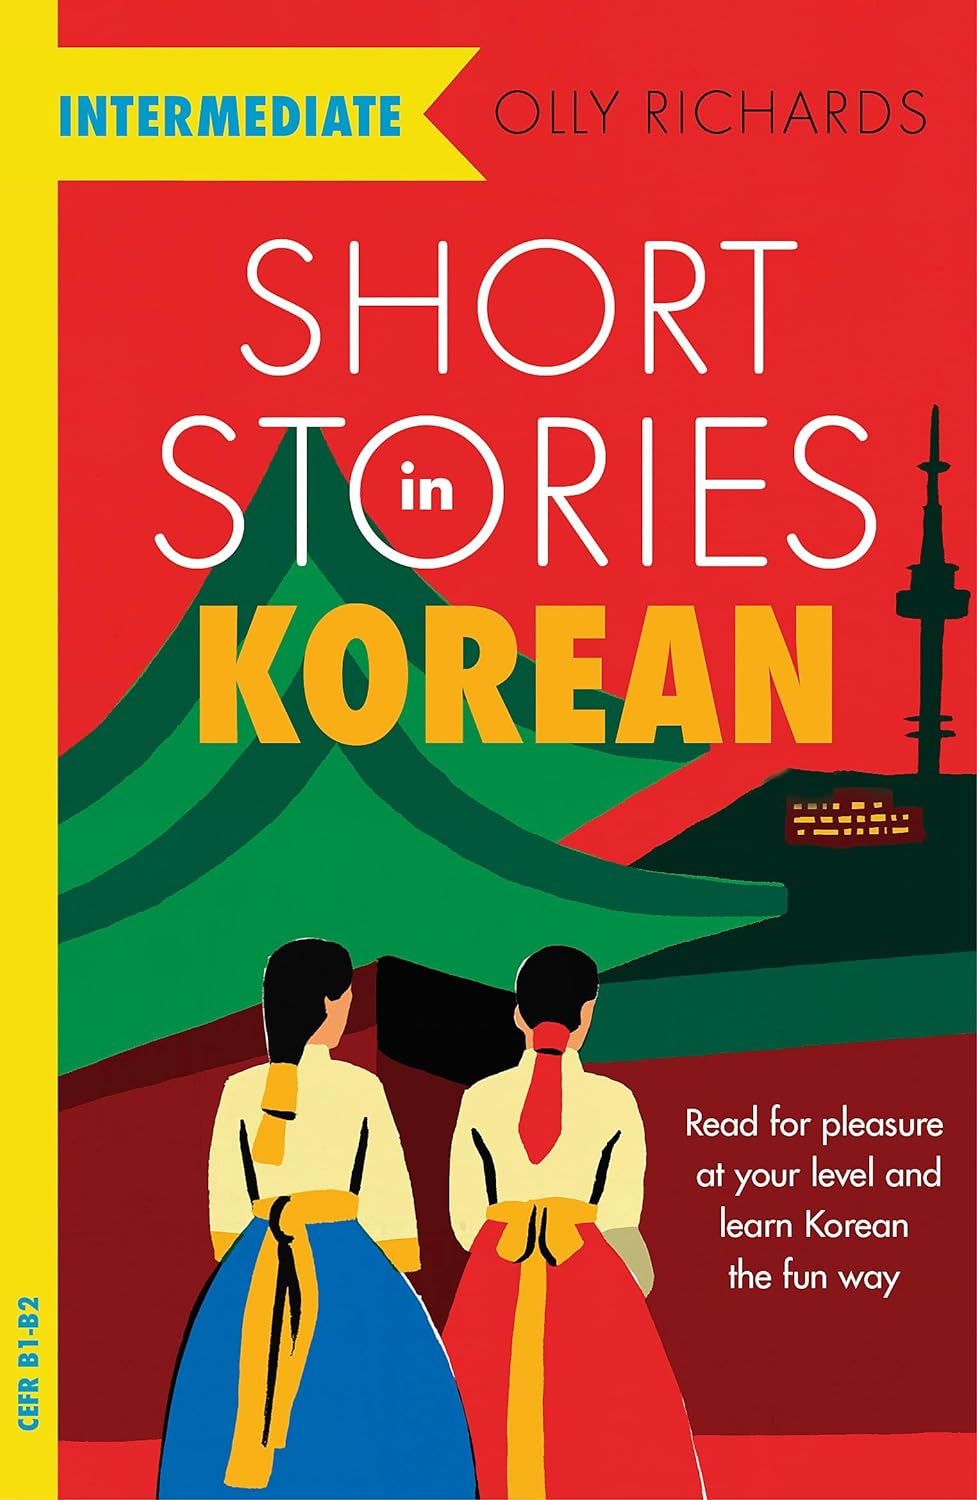 Stories korean. Korean stories. Short stories in Russian Olly Richards. Korean short stories book. Koreаn 1 books.